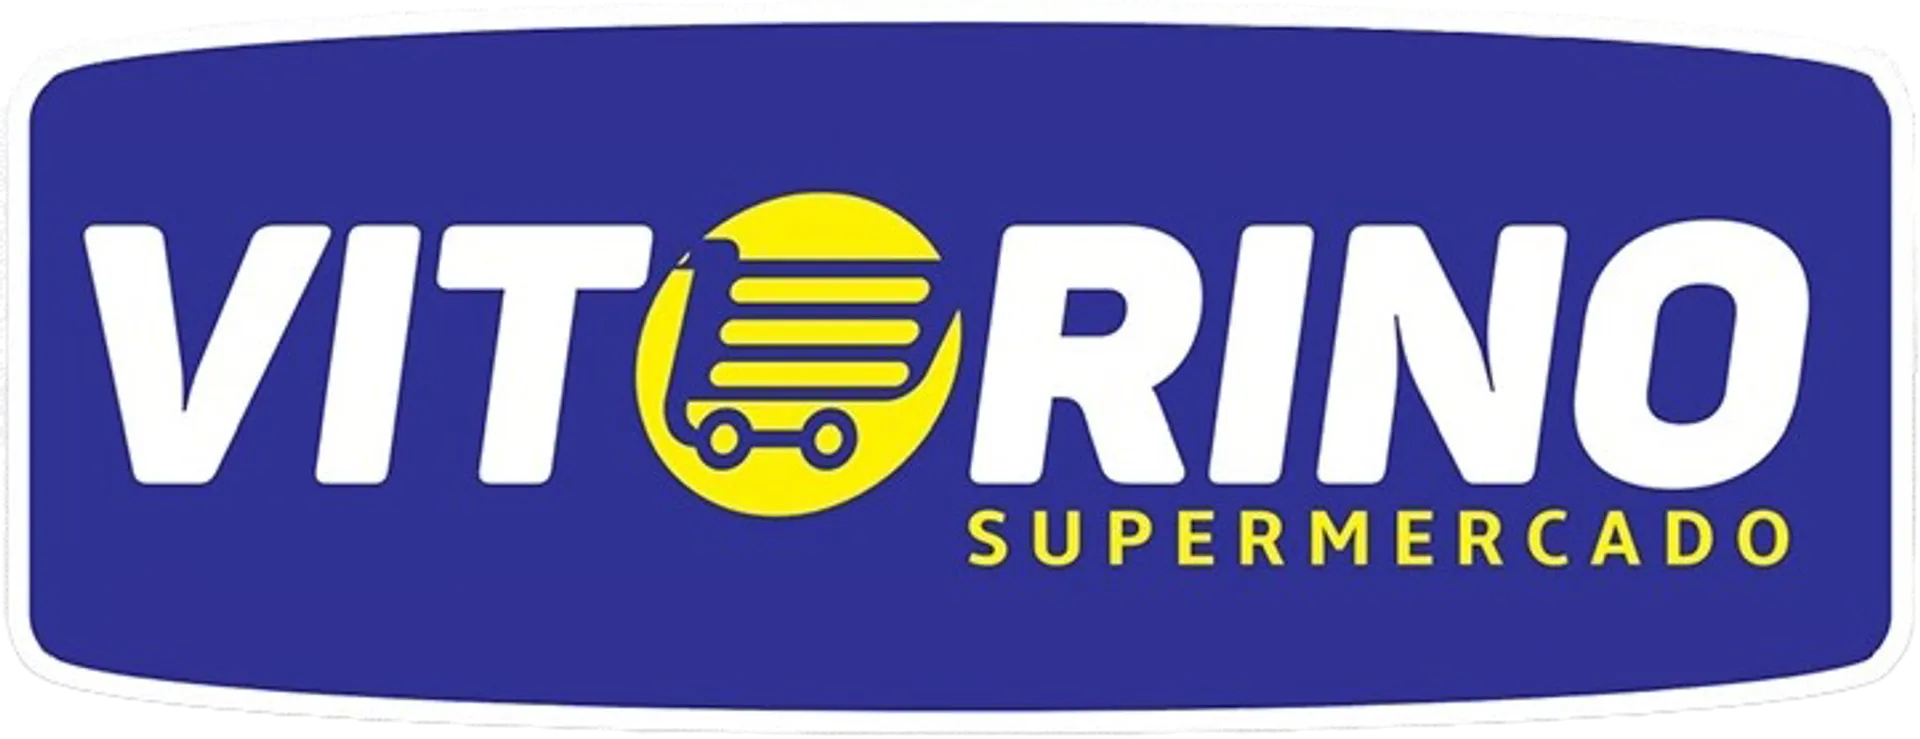 SUPERMERCADO VITORINO logo